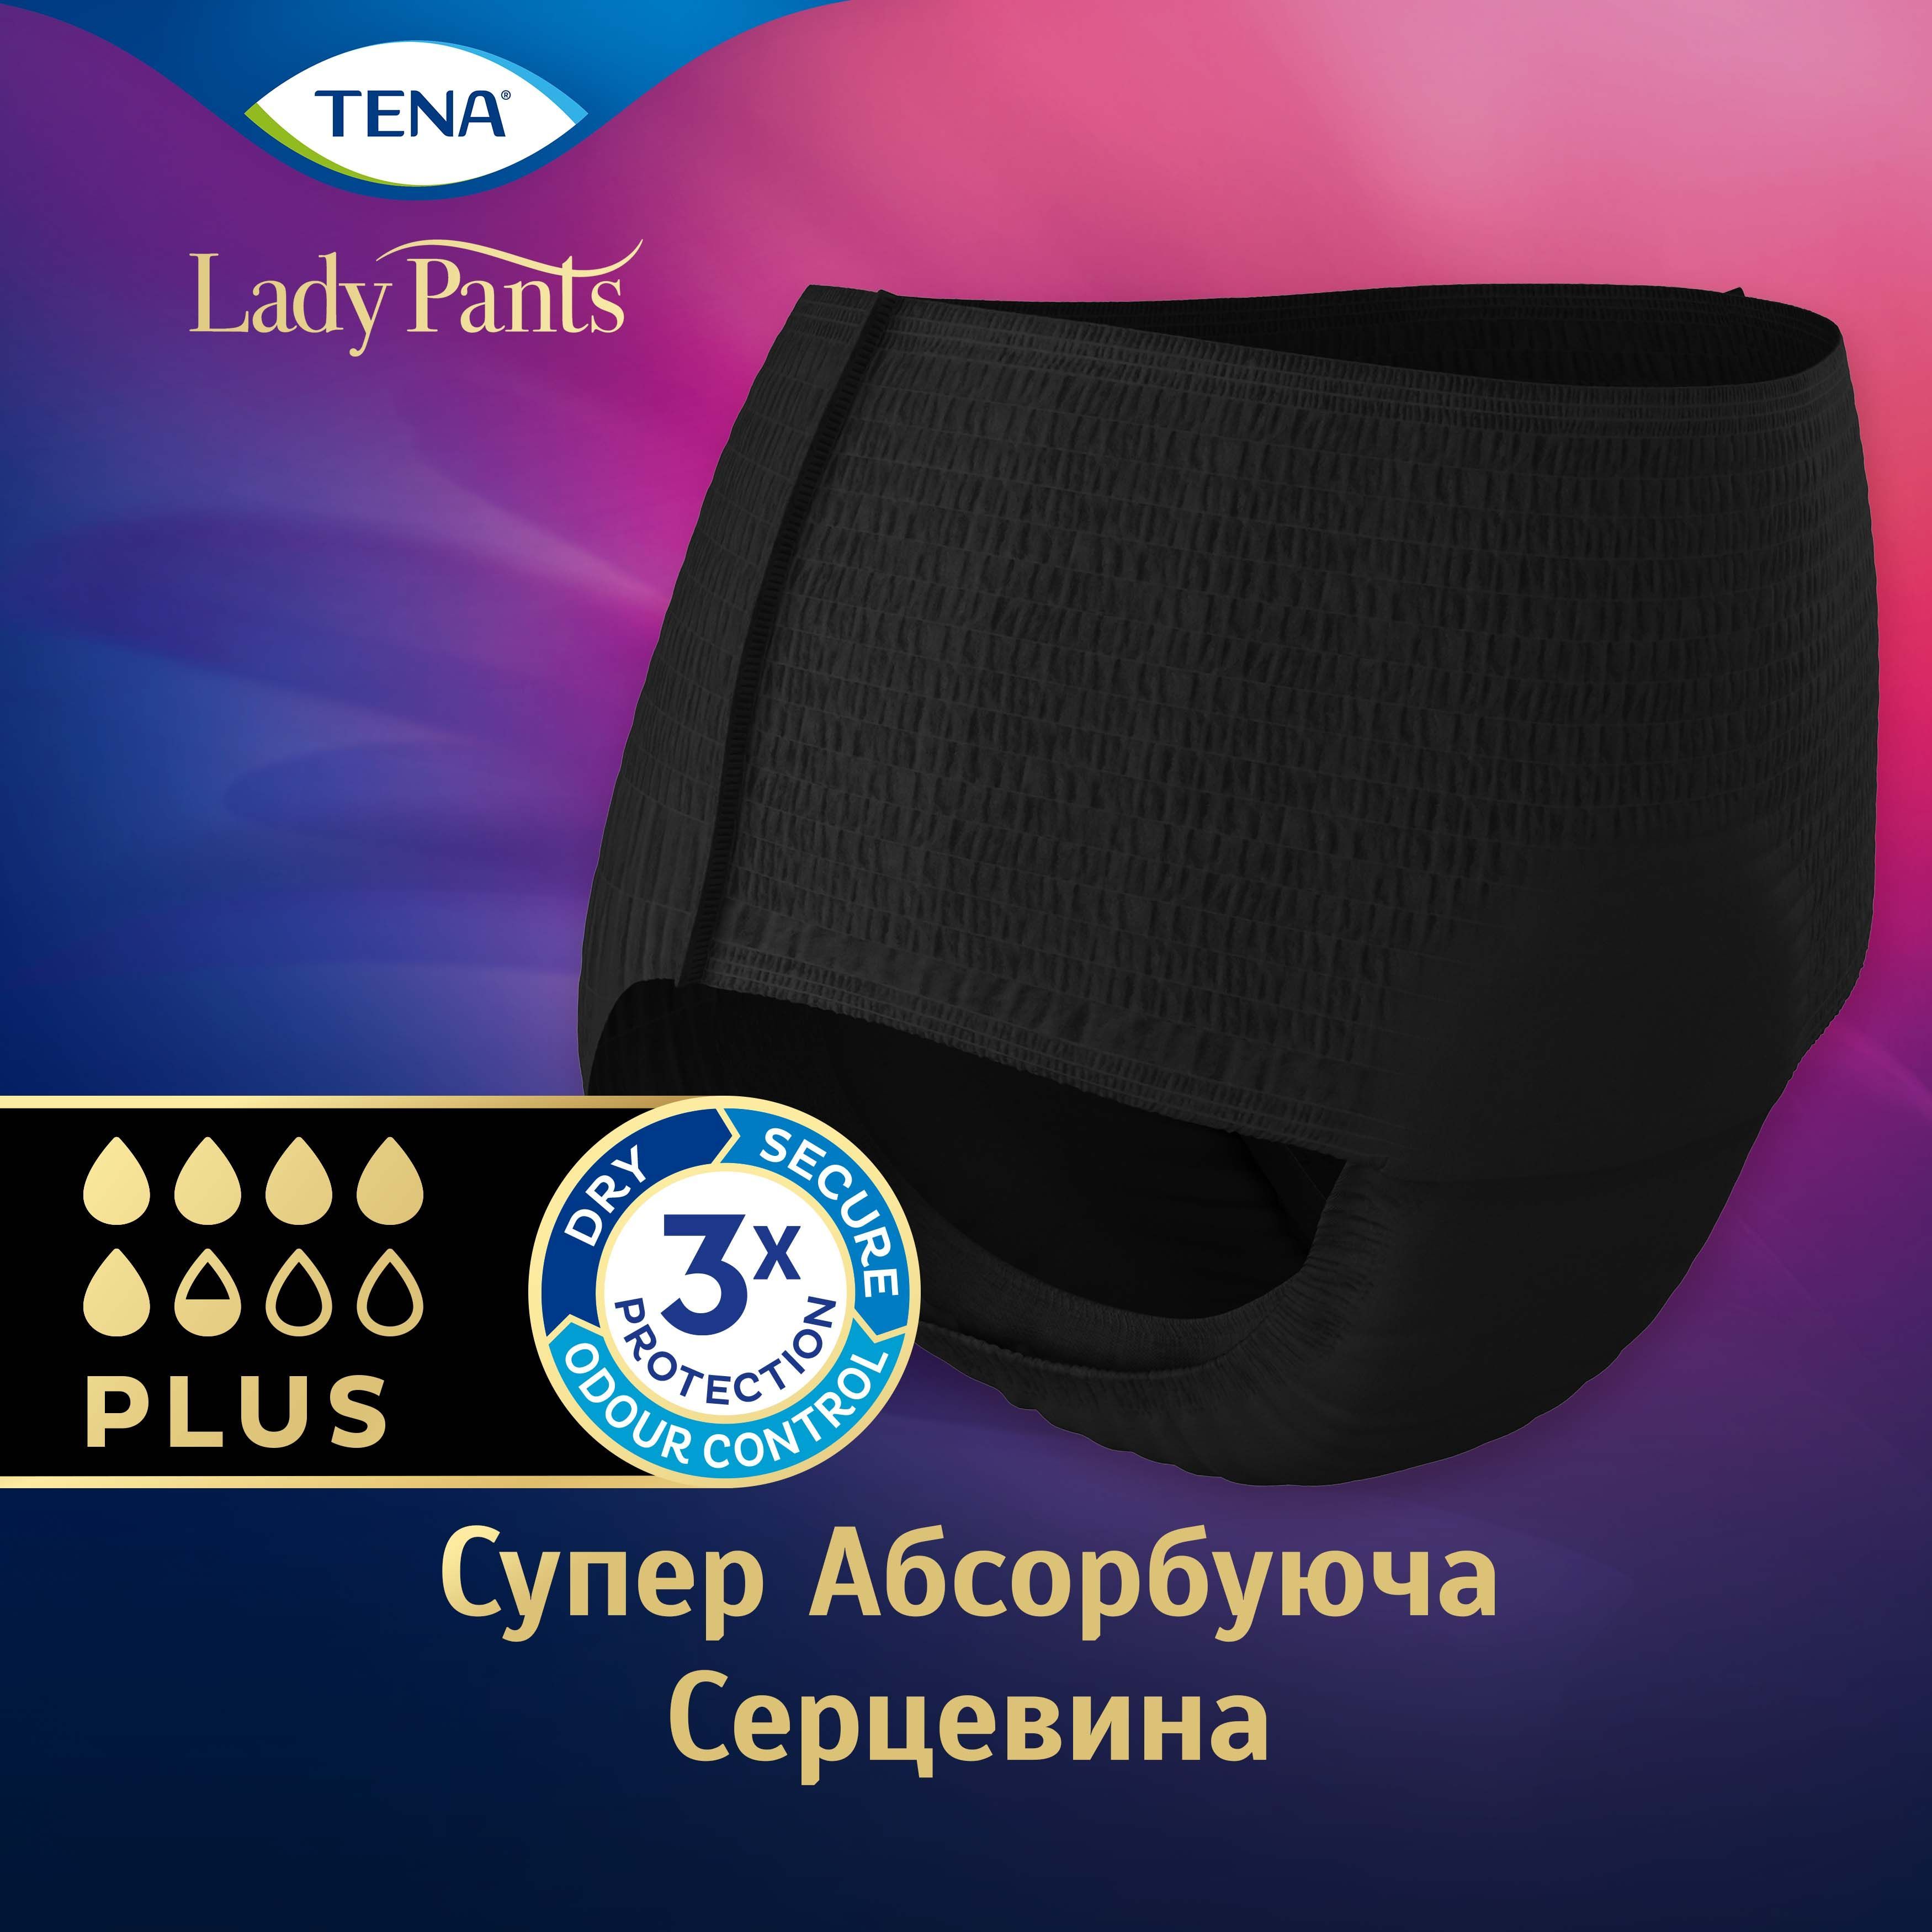 Урологические трусы для женщин Tena Lady Pants Plus Black M, 9 шт. - фото 3